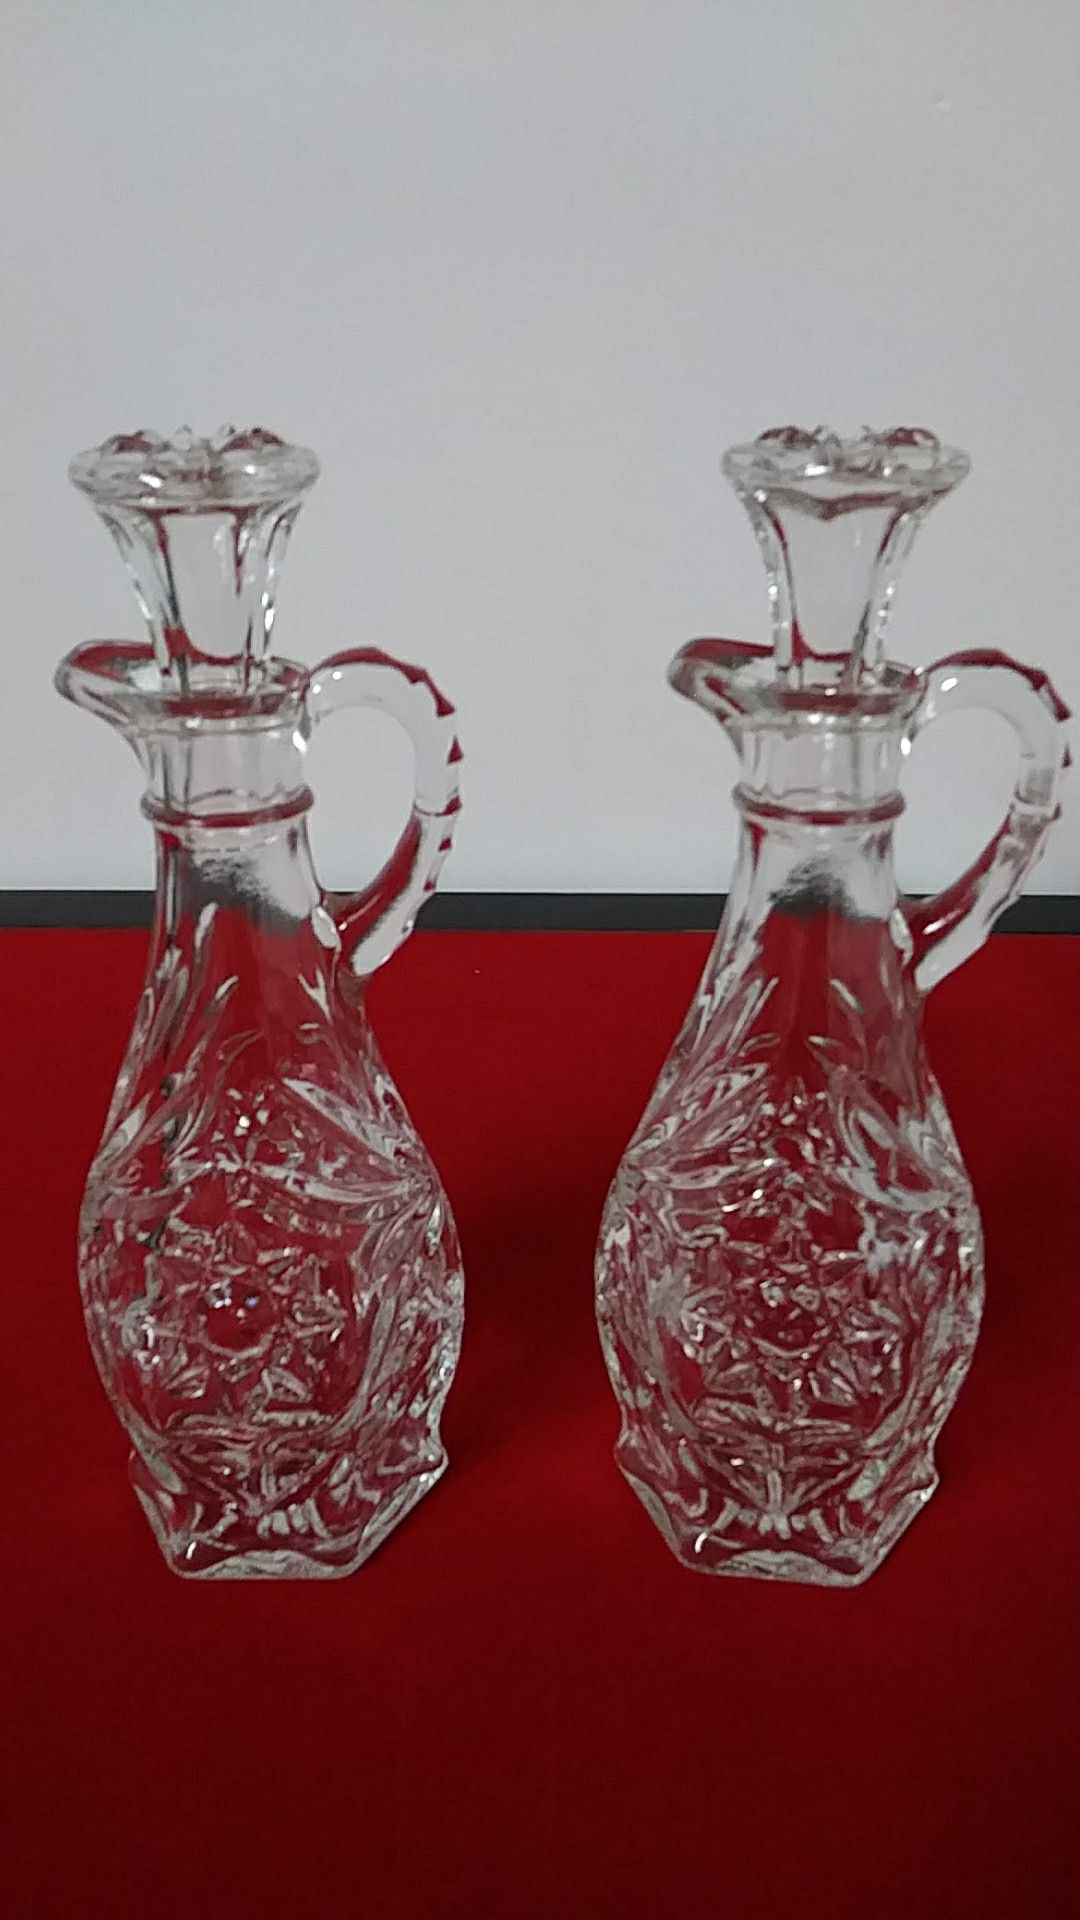 Oil vinegar poured glass vintage antique rare cut glass